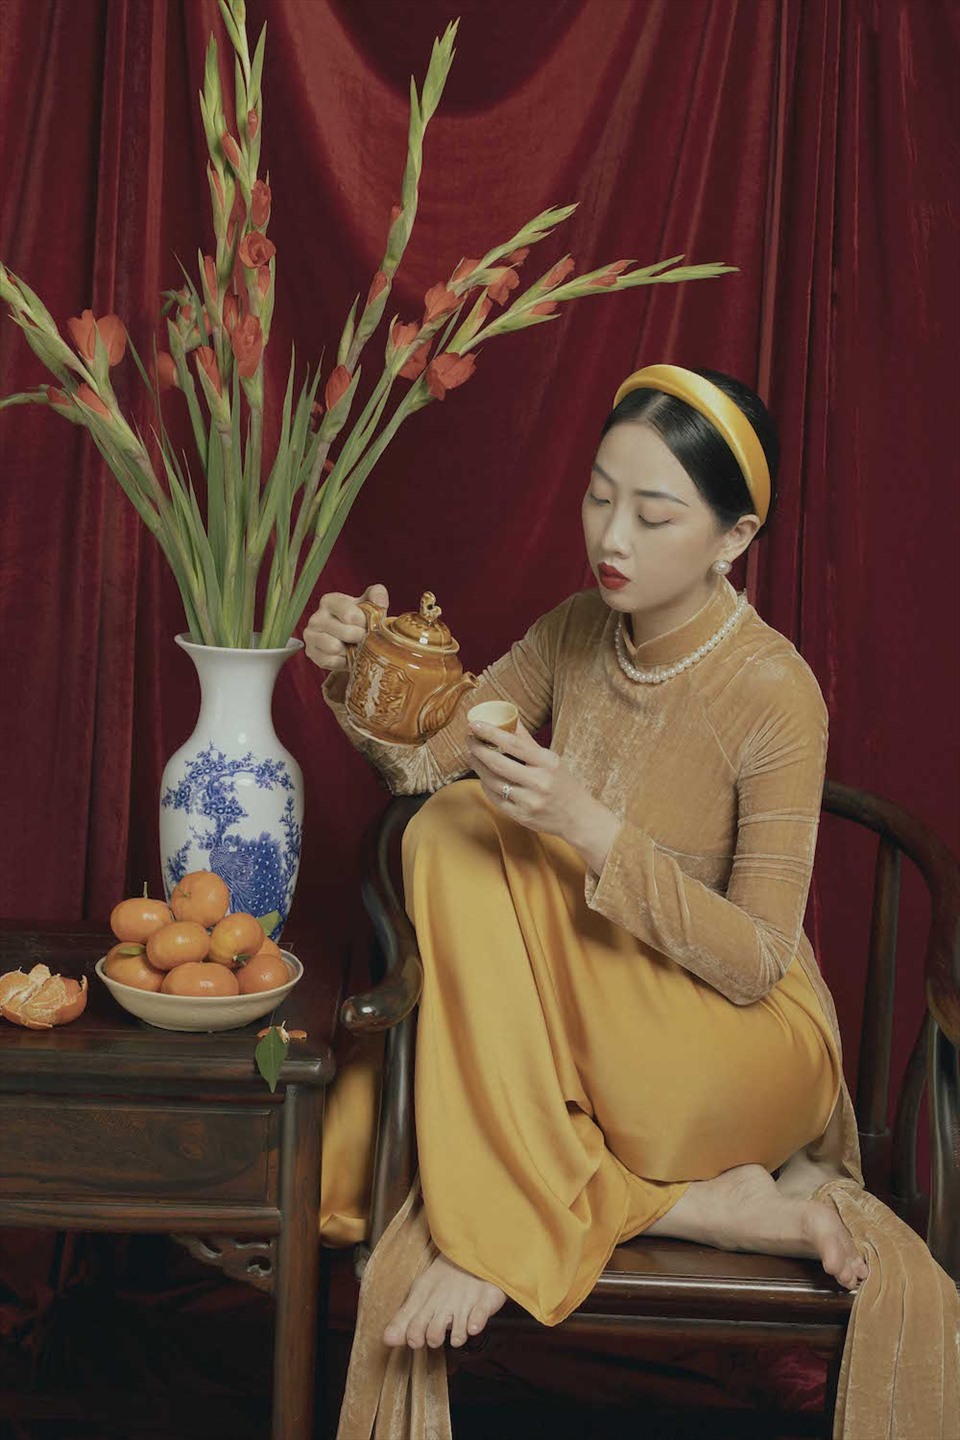 Lấy cảm hứng từ hình ảnh những người phụ nữ xưa, tà áo dài vàng mà MC Hà Trinh lựa chọn cùng với bối cảnh bàn trà, ấm nước, bình hoa lay-ơn đỏ… cho người xem cảm giác mộc mạc, gần gũi.